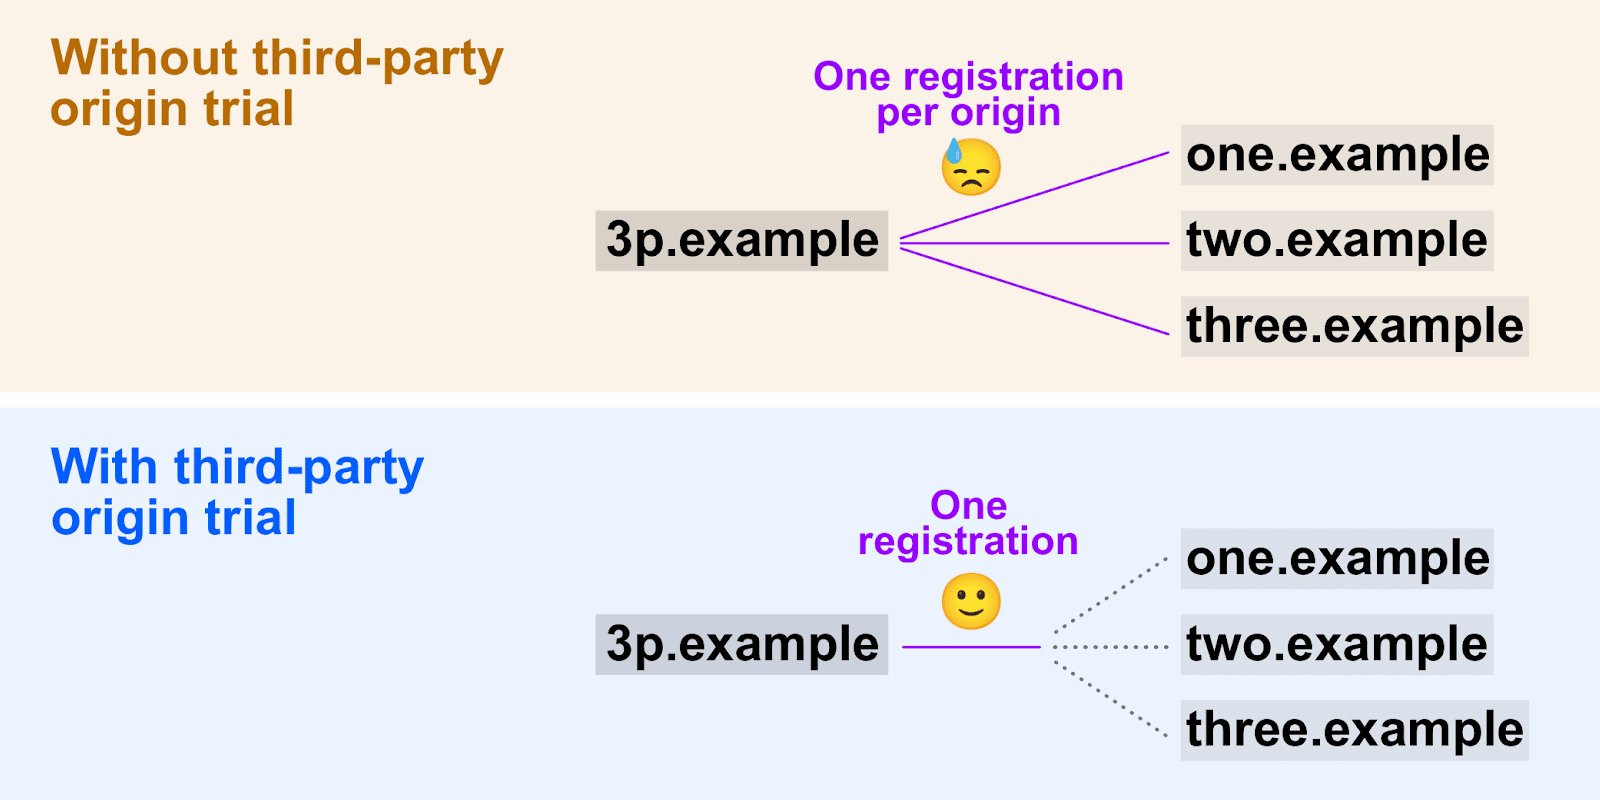 Sơ đồ cho thấy cách bản dùng thử theo nguyên gốc của bên thứ ba cho phép sử dụng một mã thông báo đăng ký trên nhiều nguồn gốc